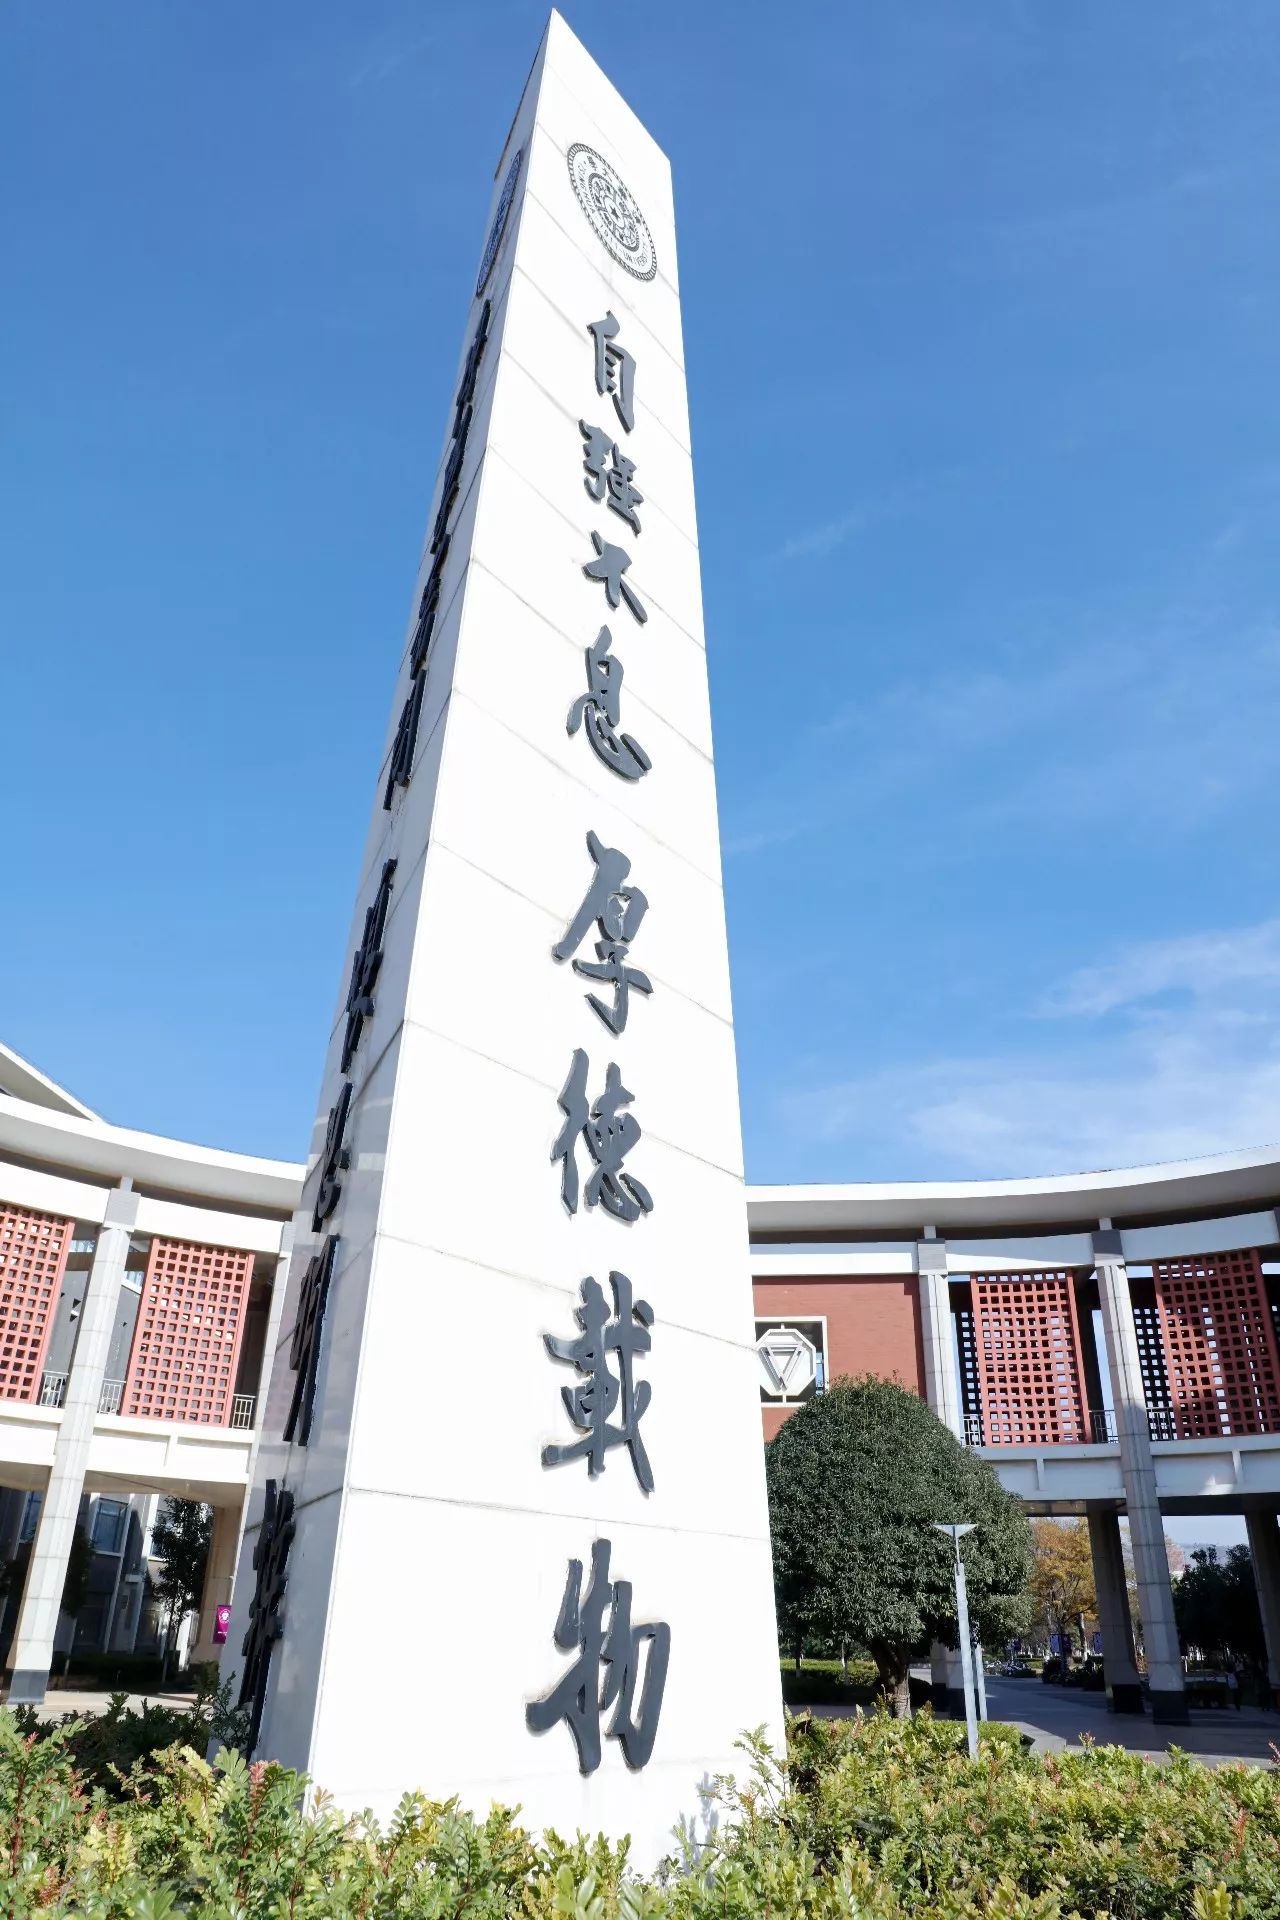 云南师范大学红烛广场图片